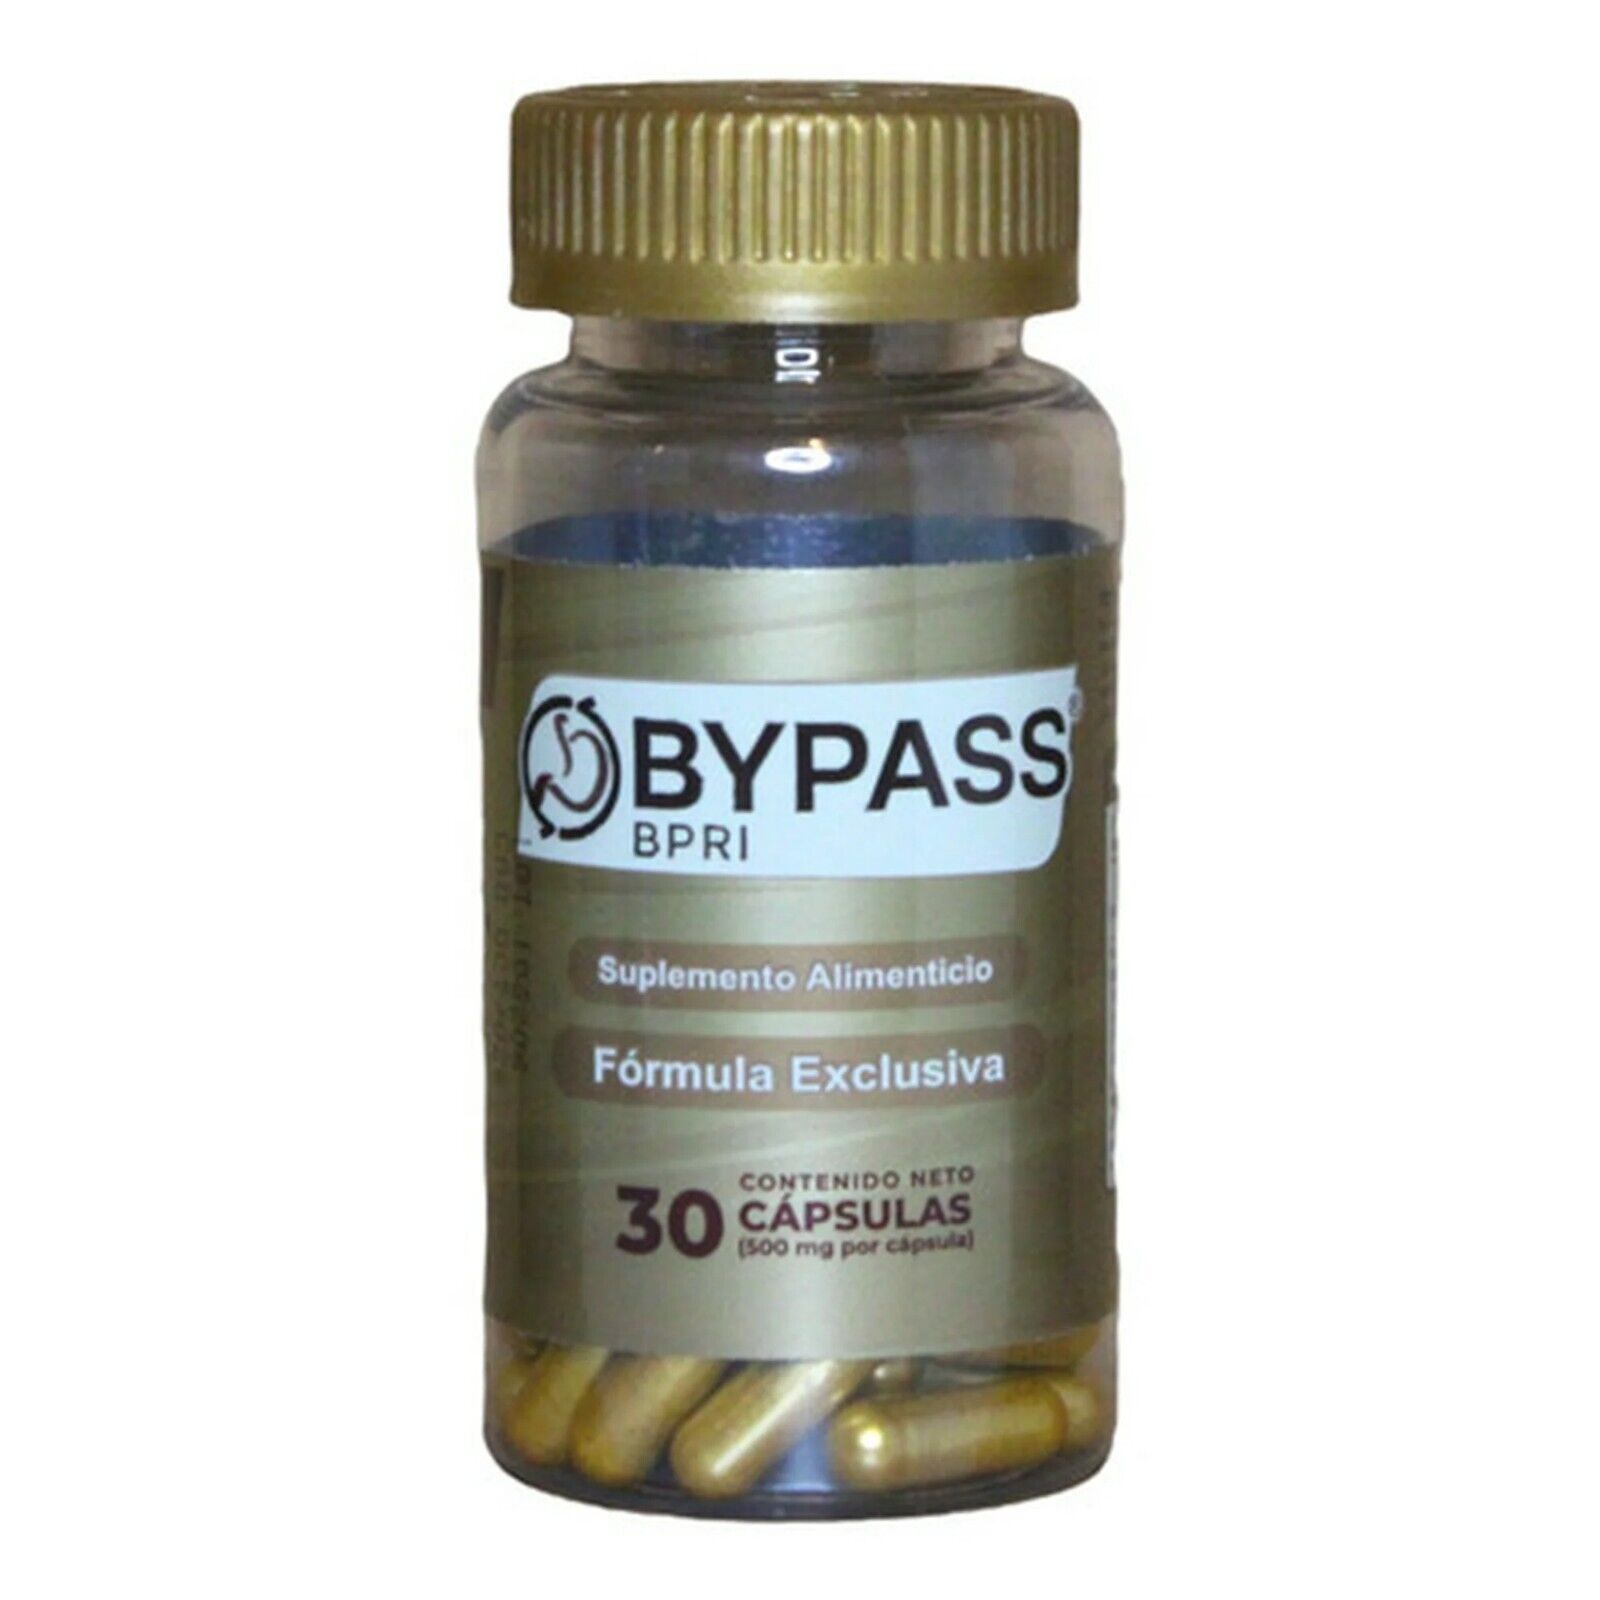 Bypass - 30 Cápsulas / Suplemento Alimenticio para Bajar de Peso